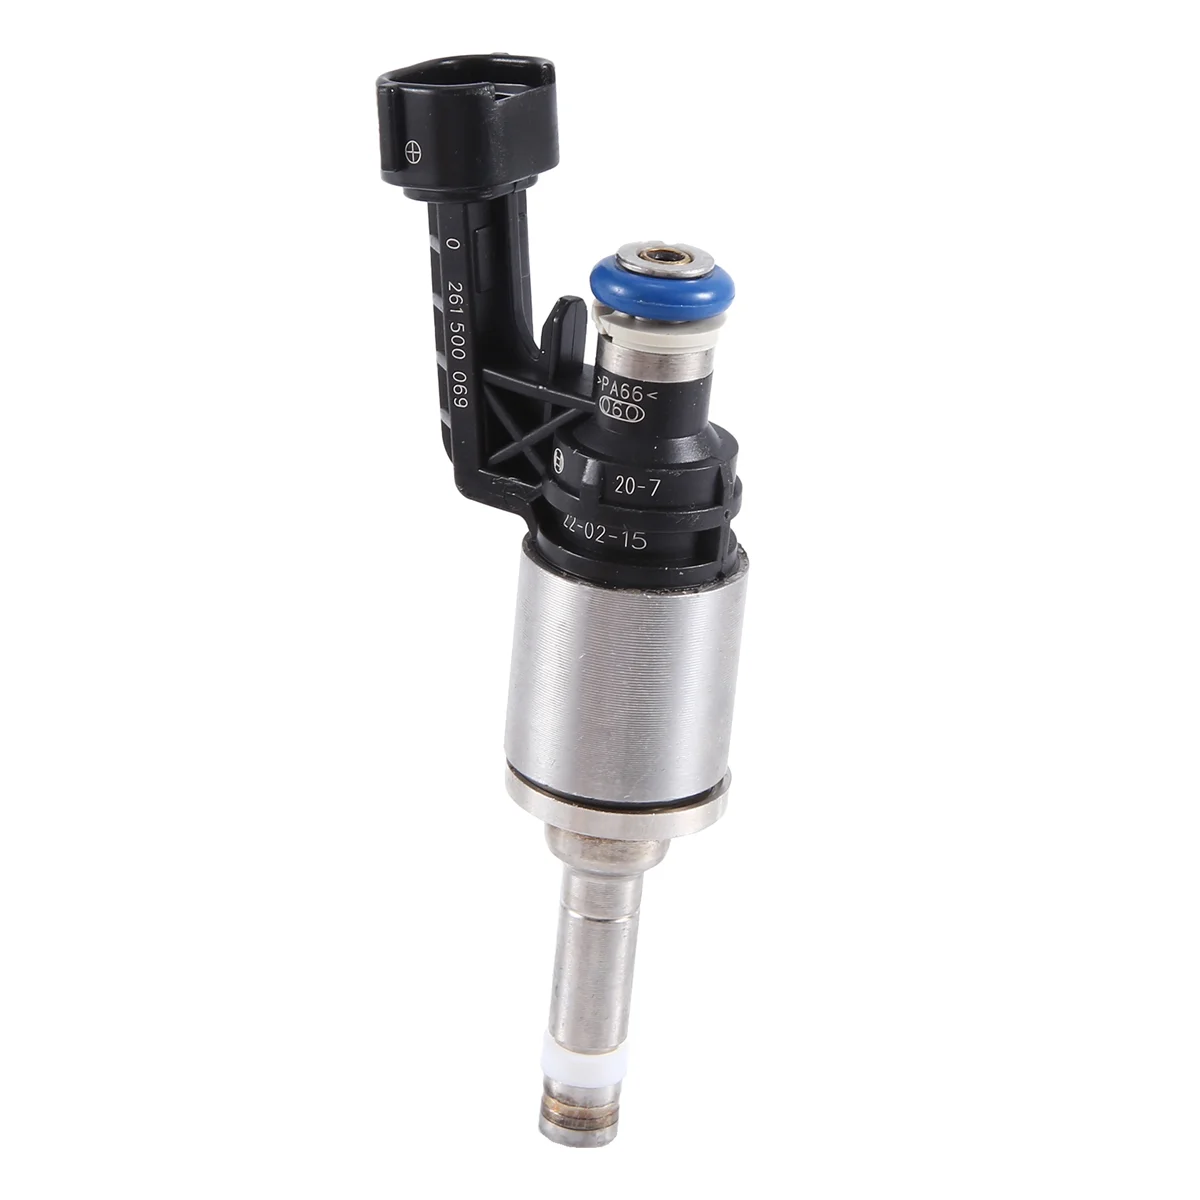 

16600-1LA0A 0261500069 Fuel Injector Injector Nozzle Automotive for Infiniti 5.6L 2011-2013